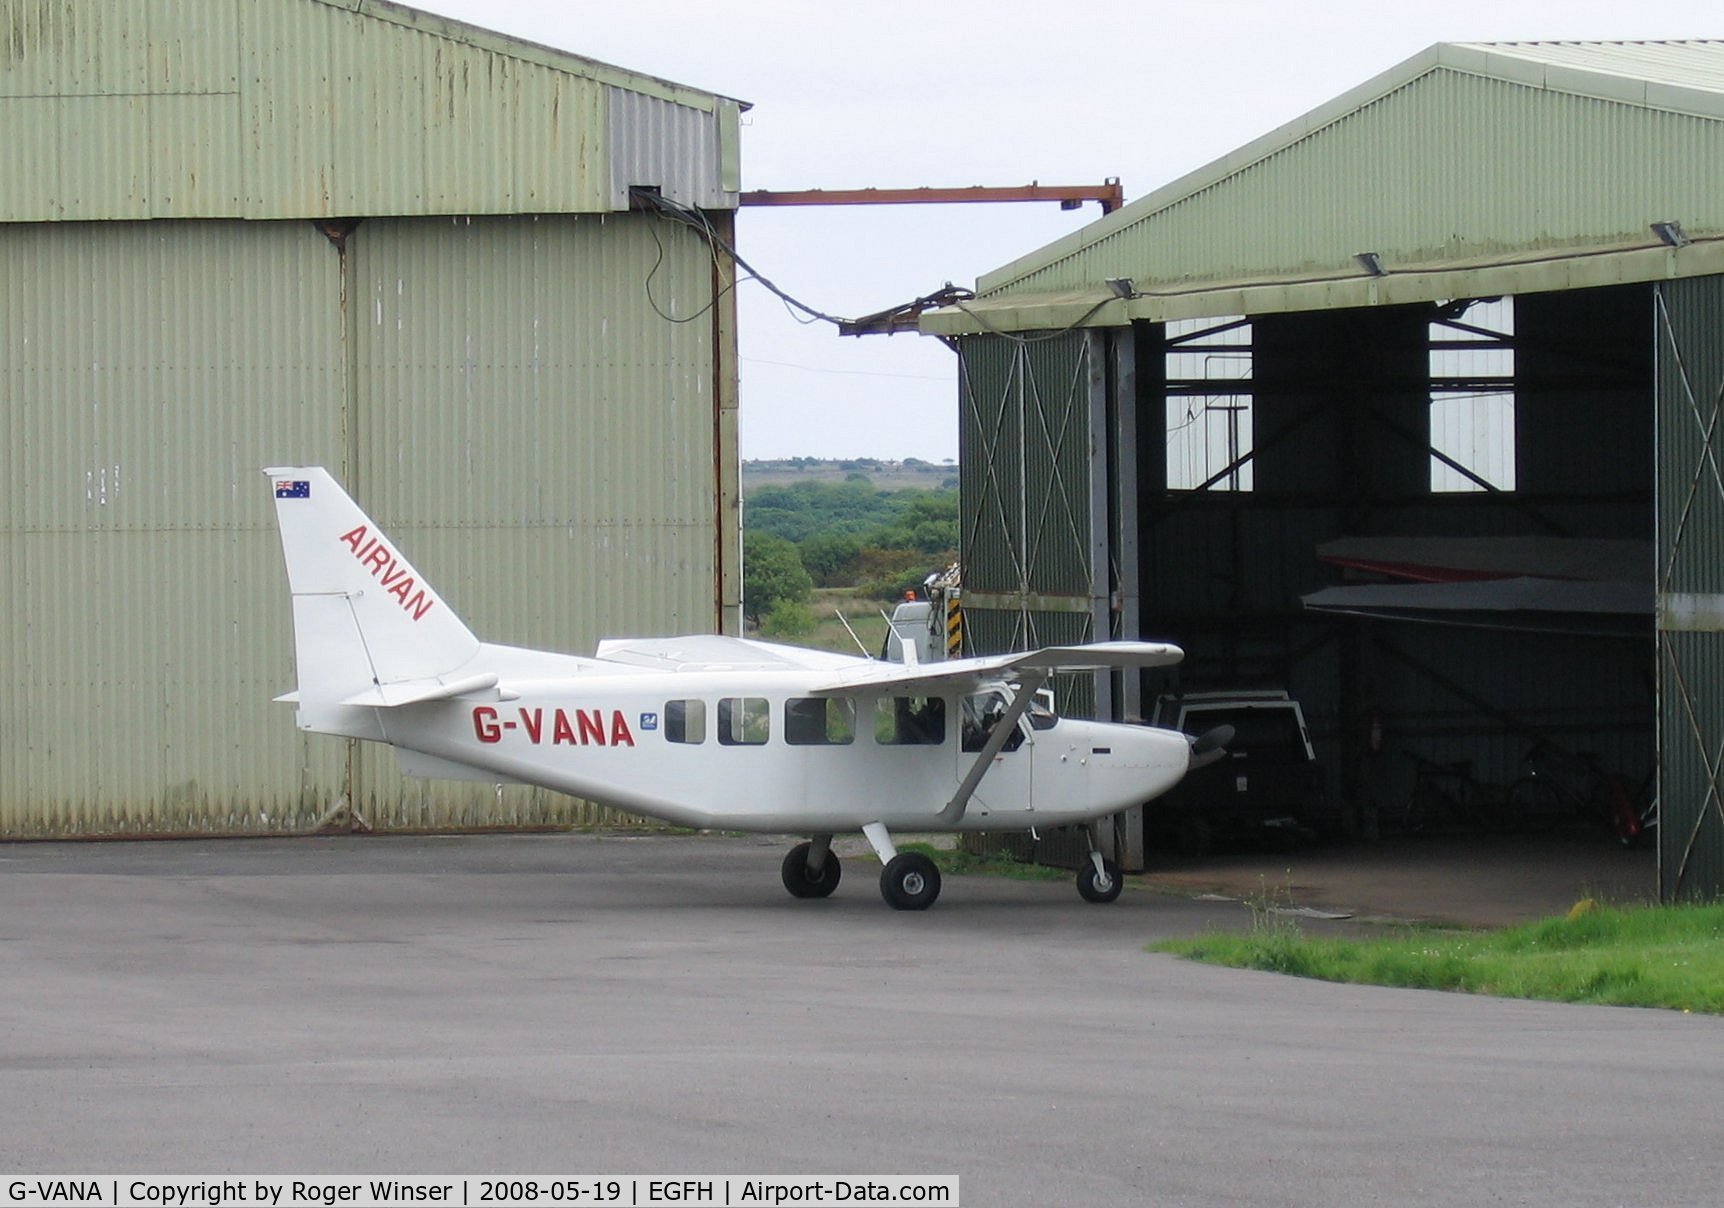 G-VANA, 2004 Gippsland GA-8 Airvan C/N GA8-04-046, Airvan used by Skydive Swansea in 2008